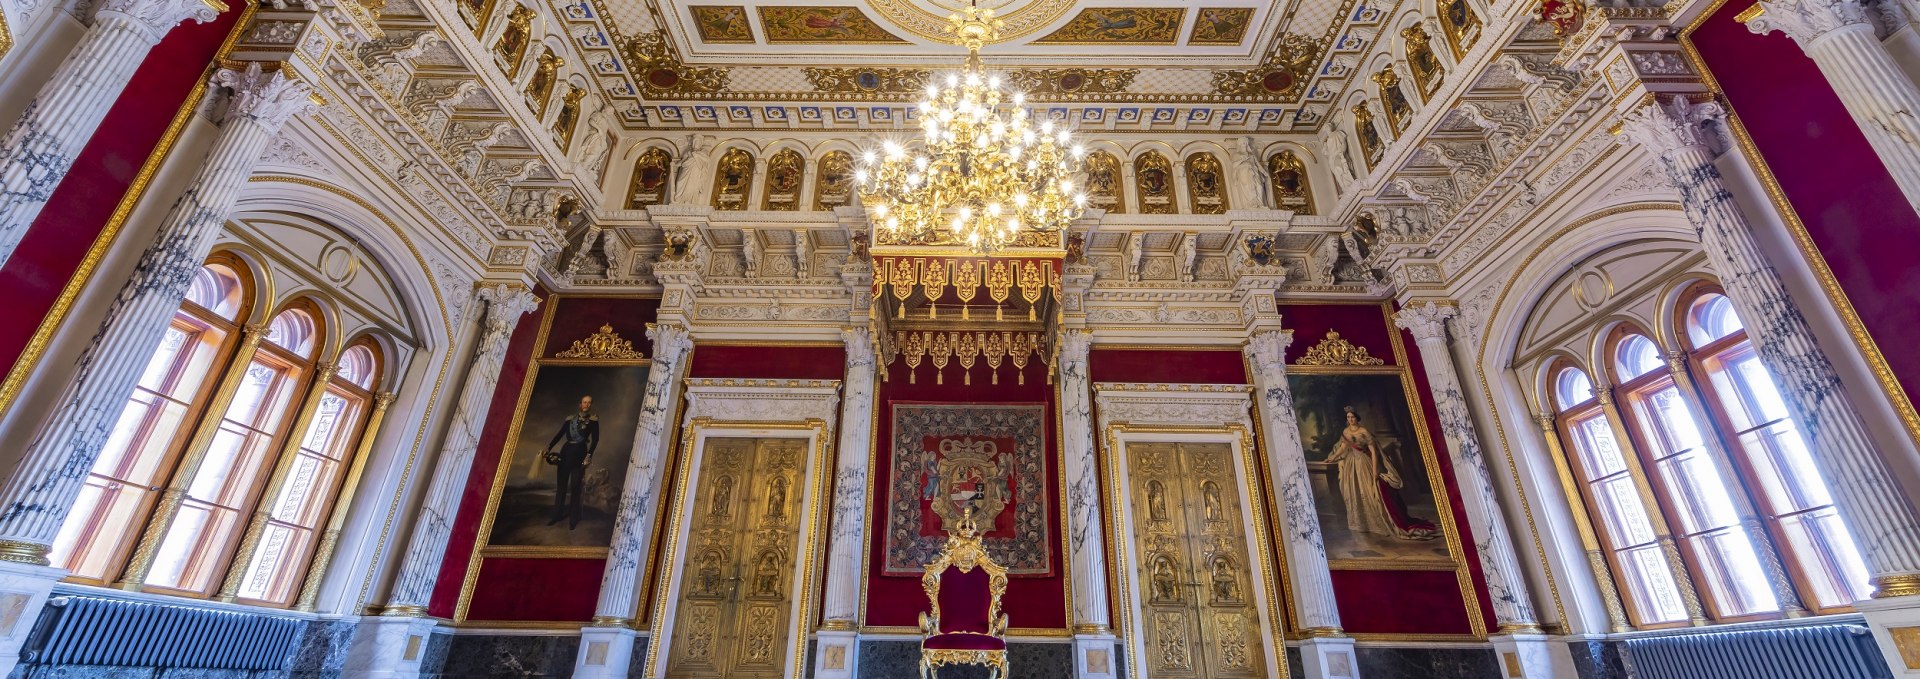 Throne Room at Schwerin Castle, © SSGK MV / Timm Allrich